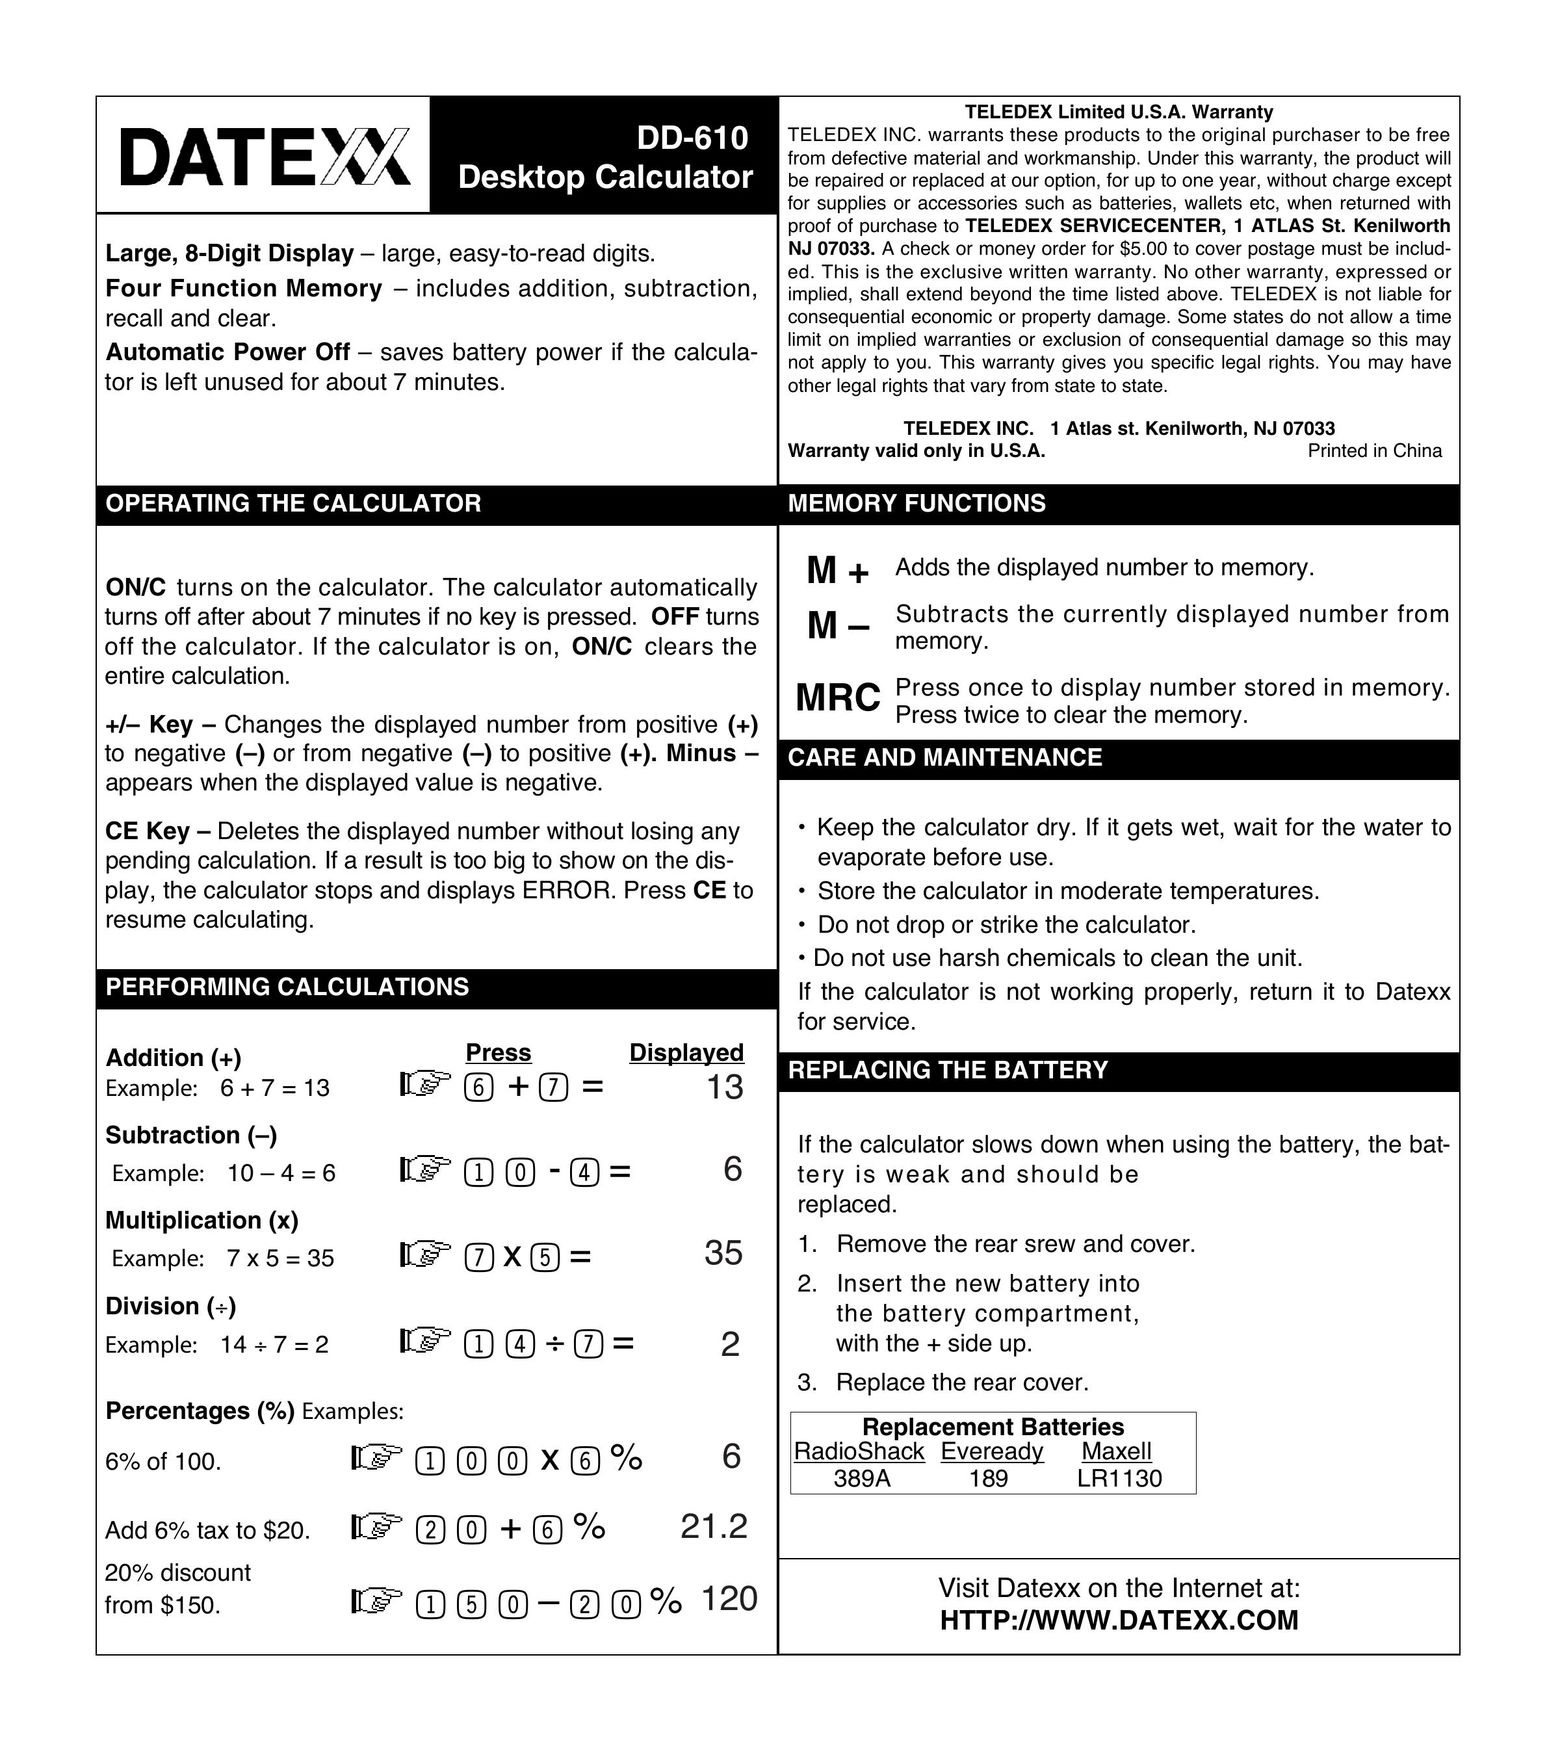 Datexx DD-610 Calculator User Manual